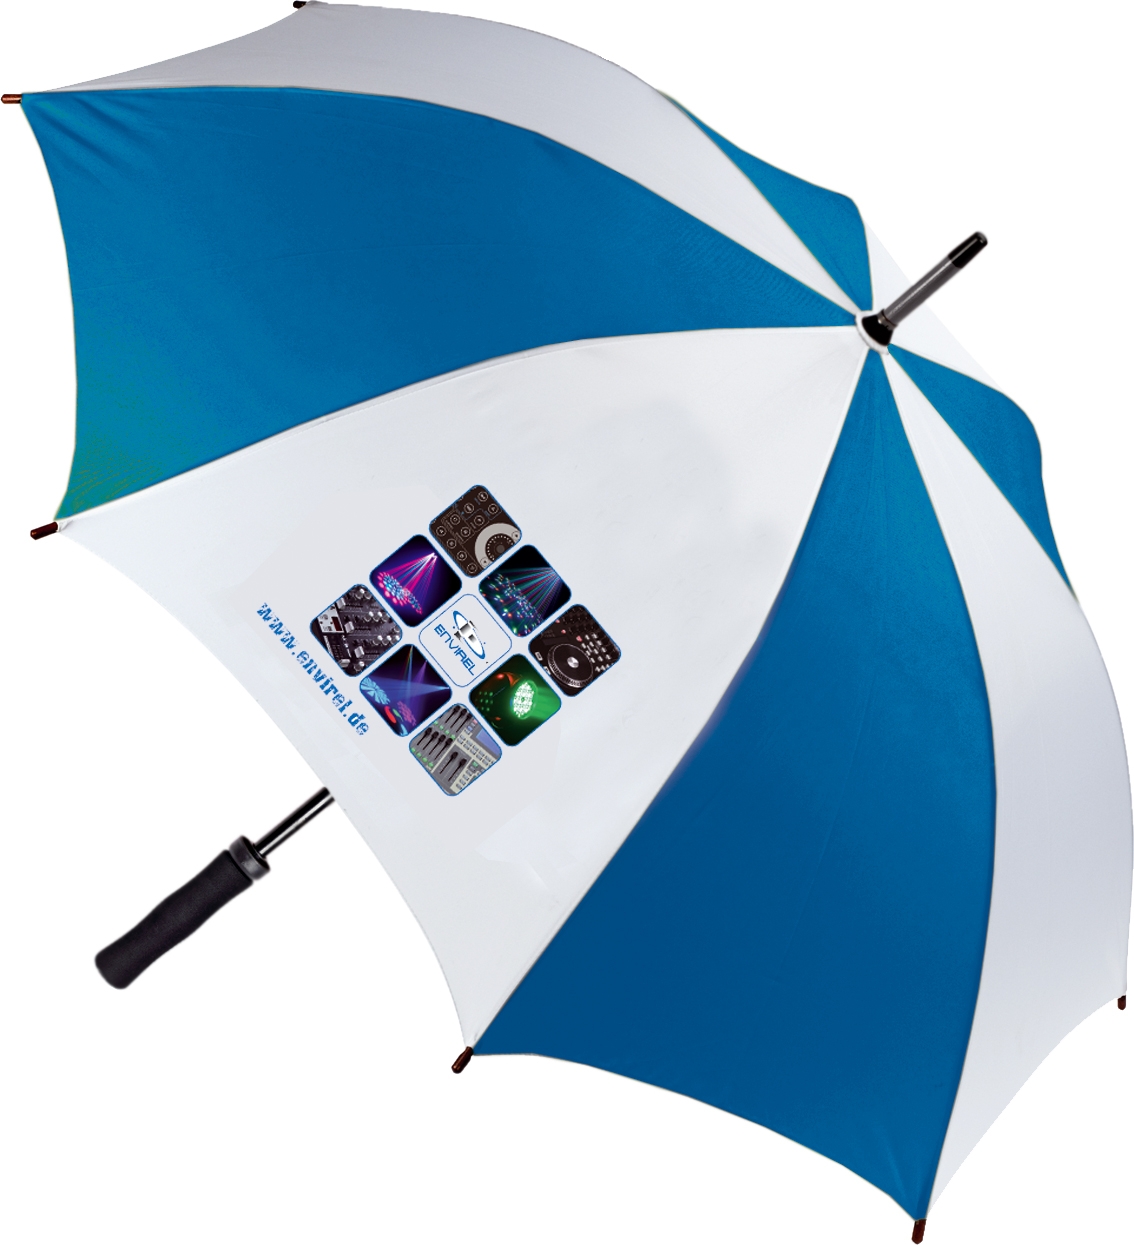 Envirel Regenschirm 131cm im Durchmesser